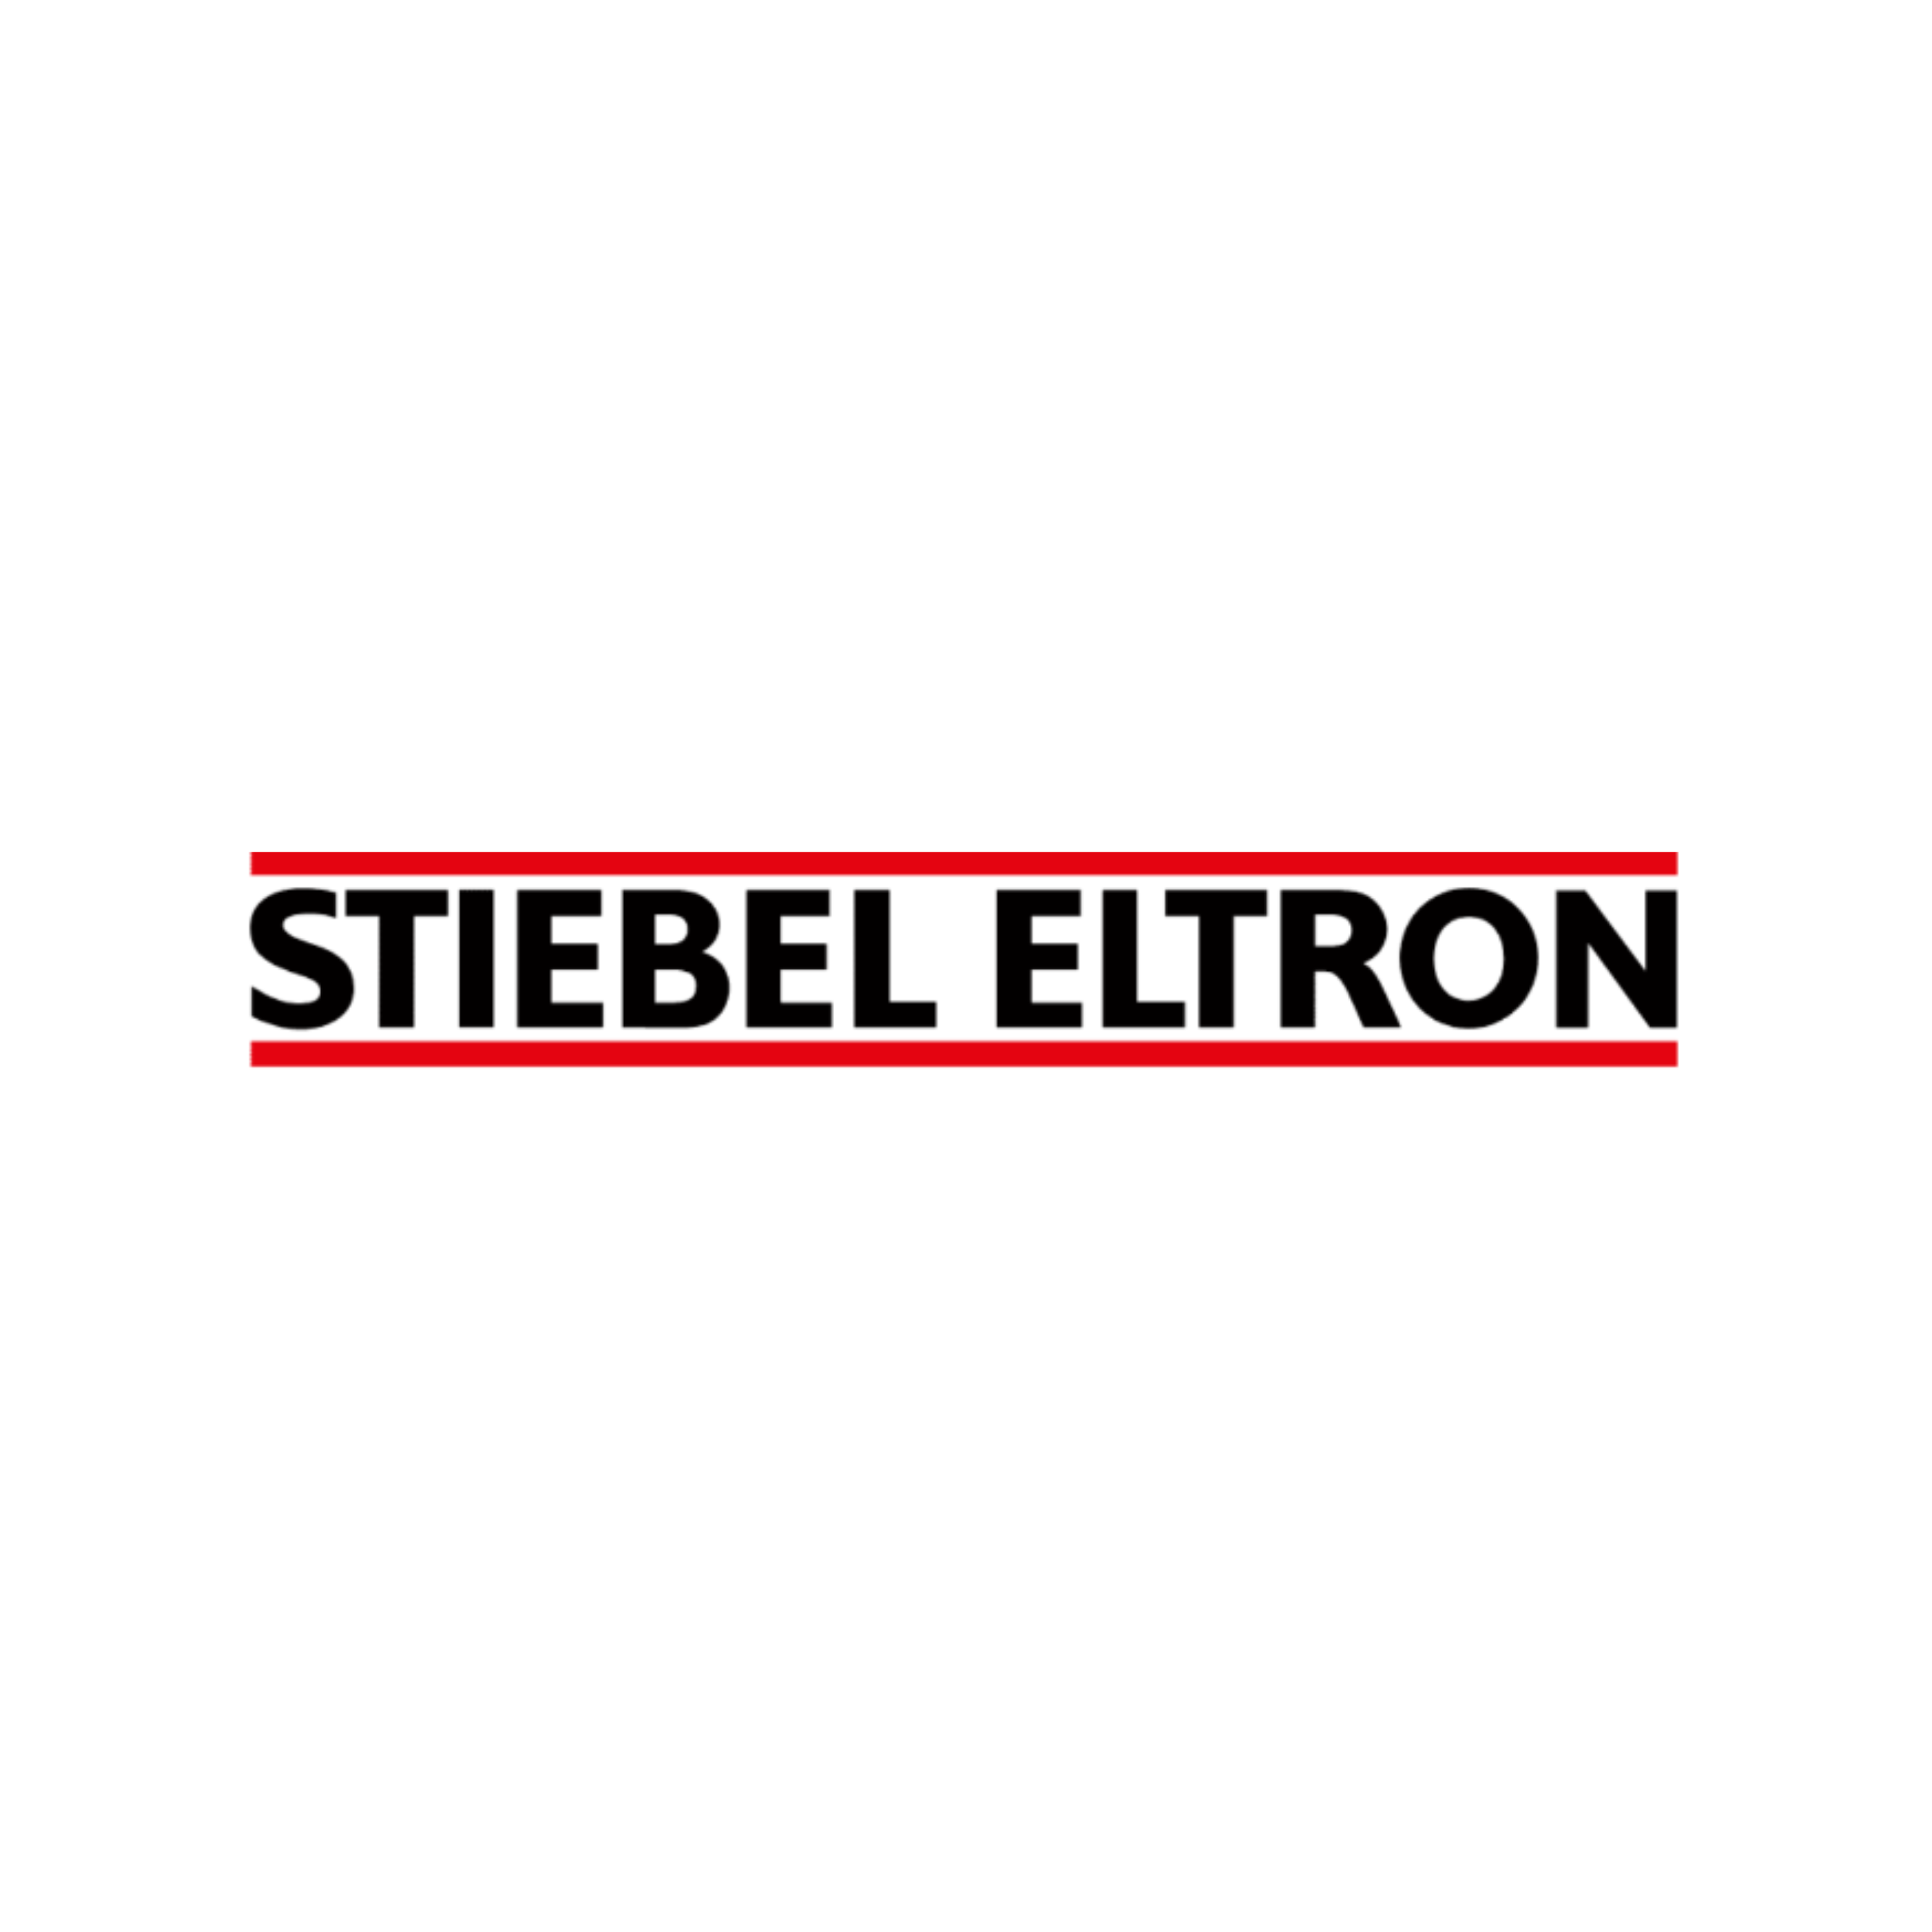 Menipex et Stiebel-Eltron : Une Alliance au Service de Votre Confort Énergétique